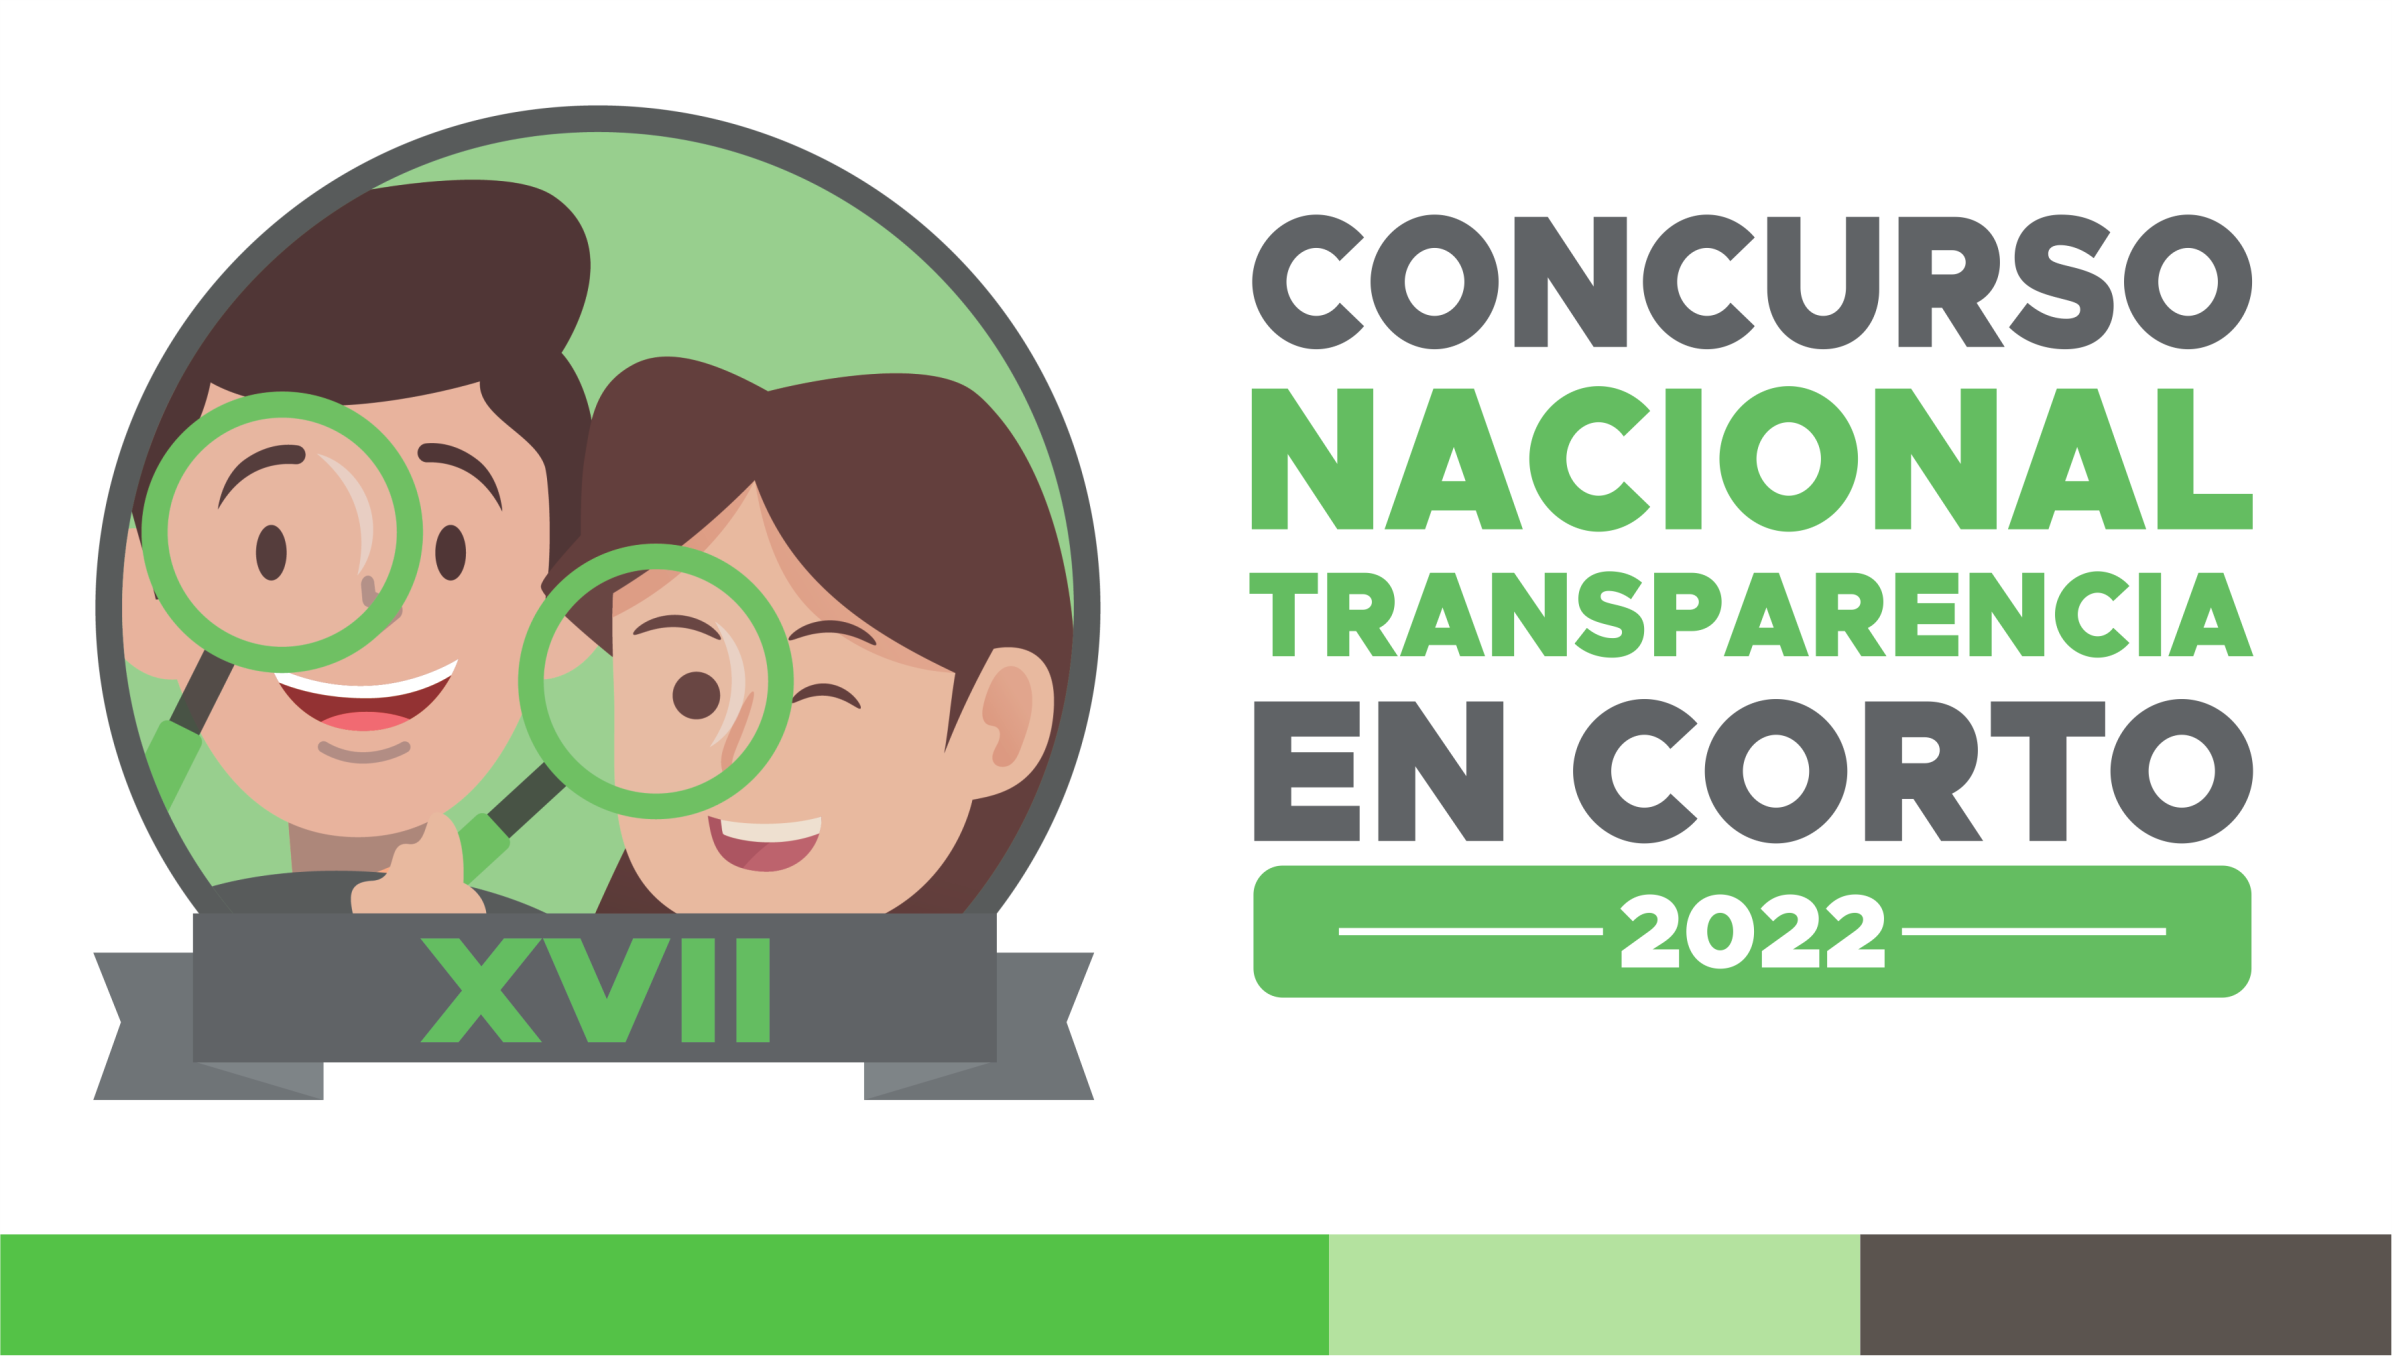 Concurso Nacional Transparencia en Corto 2022